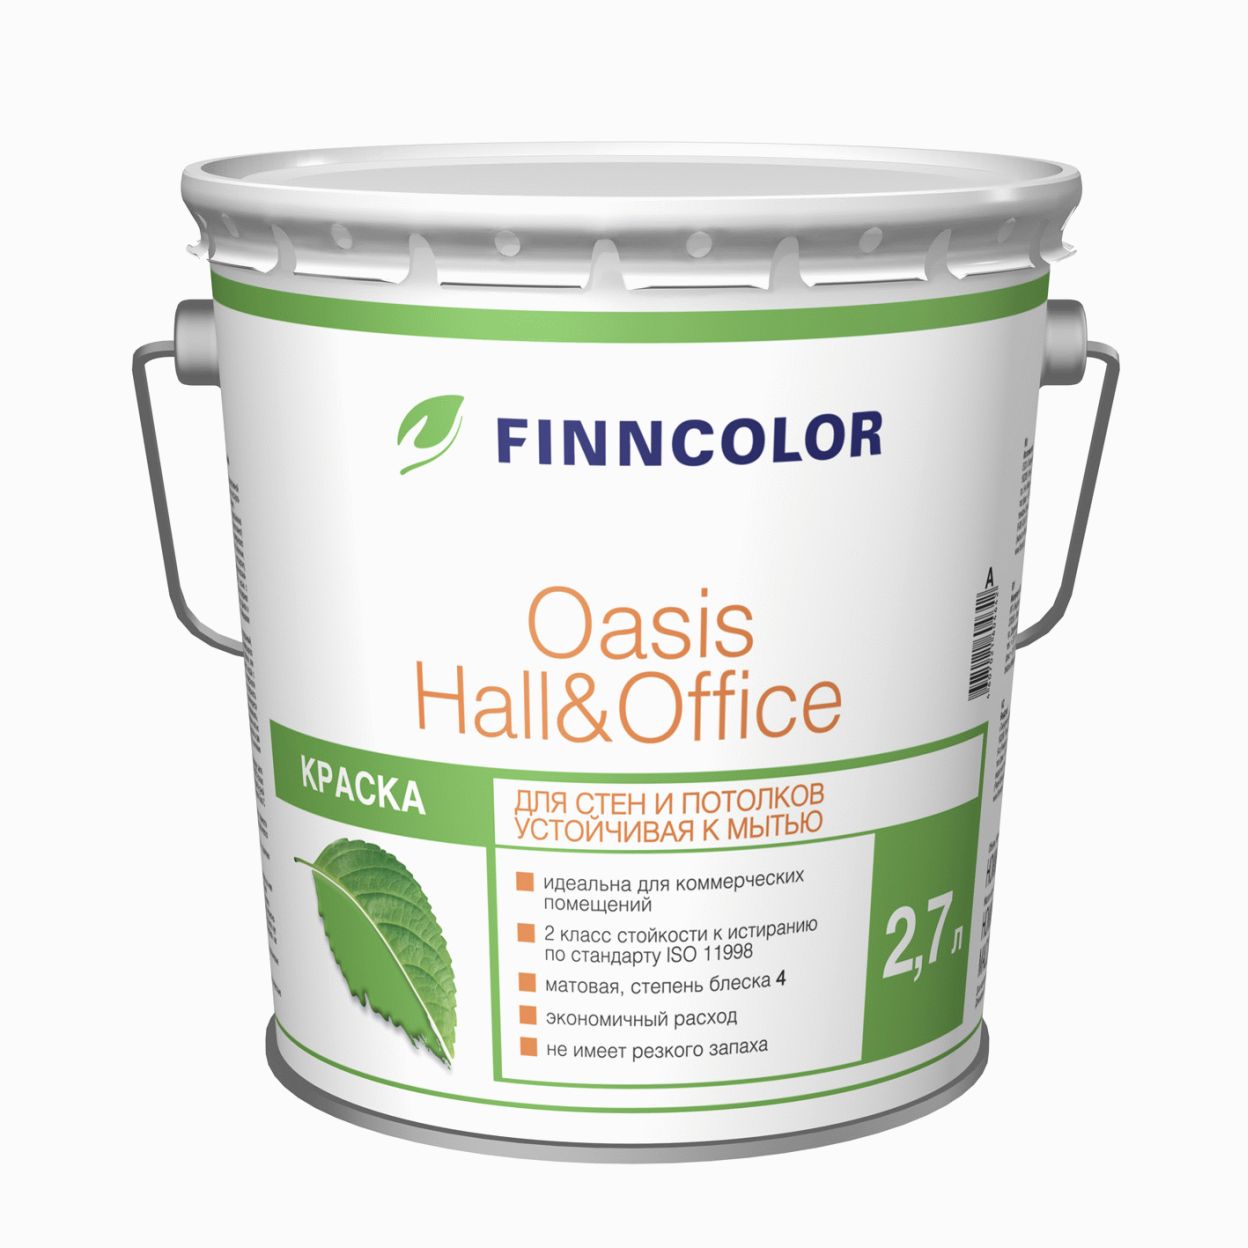 Купить Finncolor Oasis Hall&Office (белая), 2,7 л